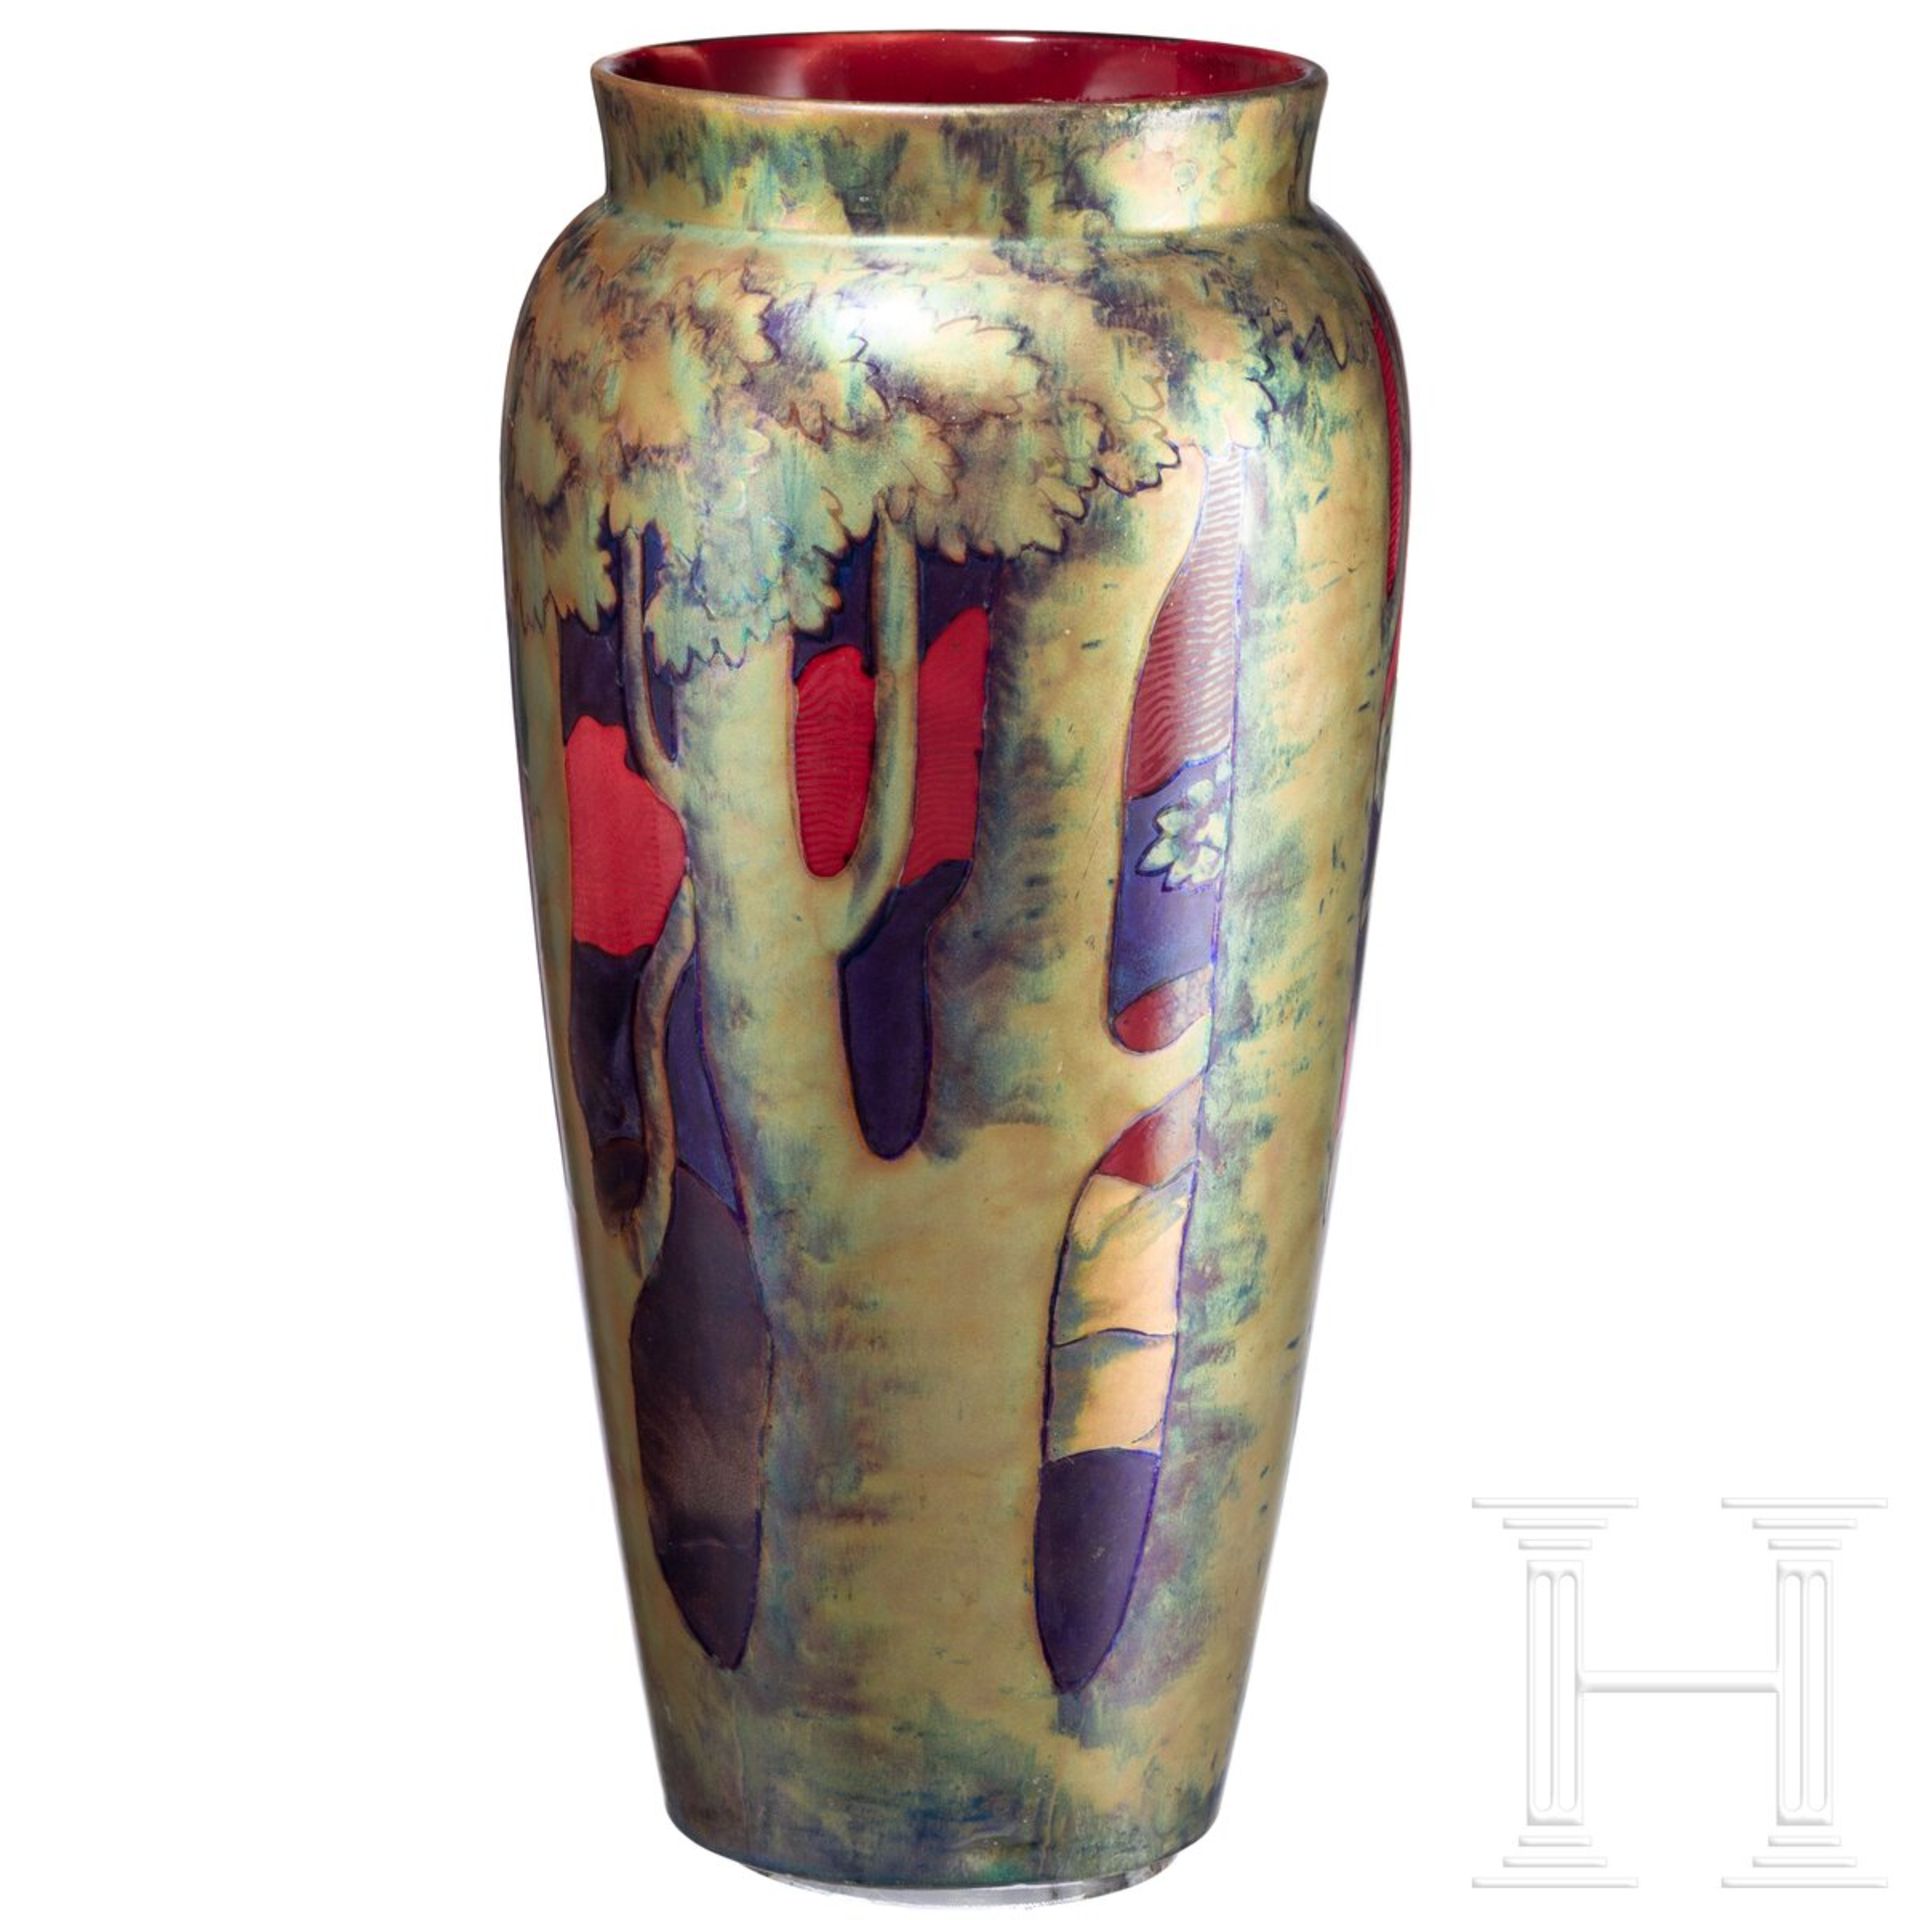 Große Jugendstil-Vase mit Landschaftsszene, Pecs (Fünfkirchen), Zsolnay, Entwurf wohl von Tade Sikor